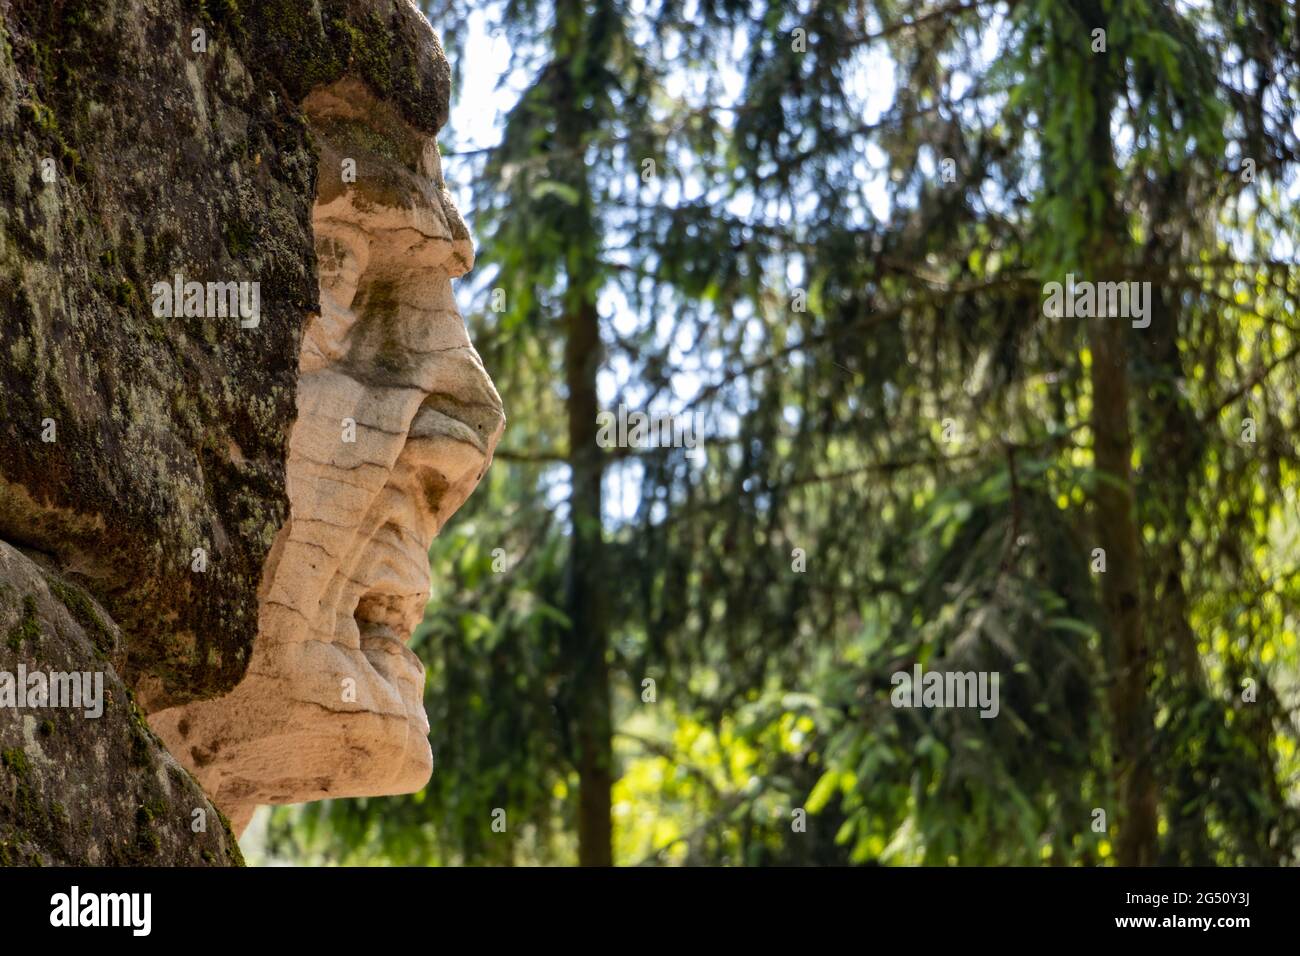 BOHÊME DU NORD, TCHÉQUIE, JUIN 06 2021, tête doyeuse sculptée dans la roche dans une forêt. Banque D'Images